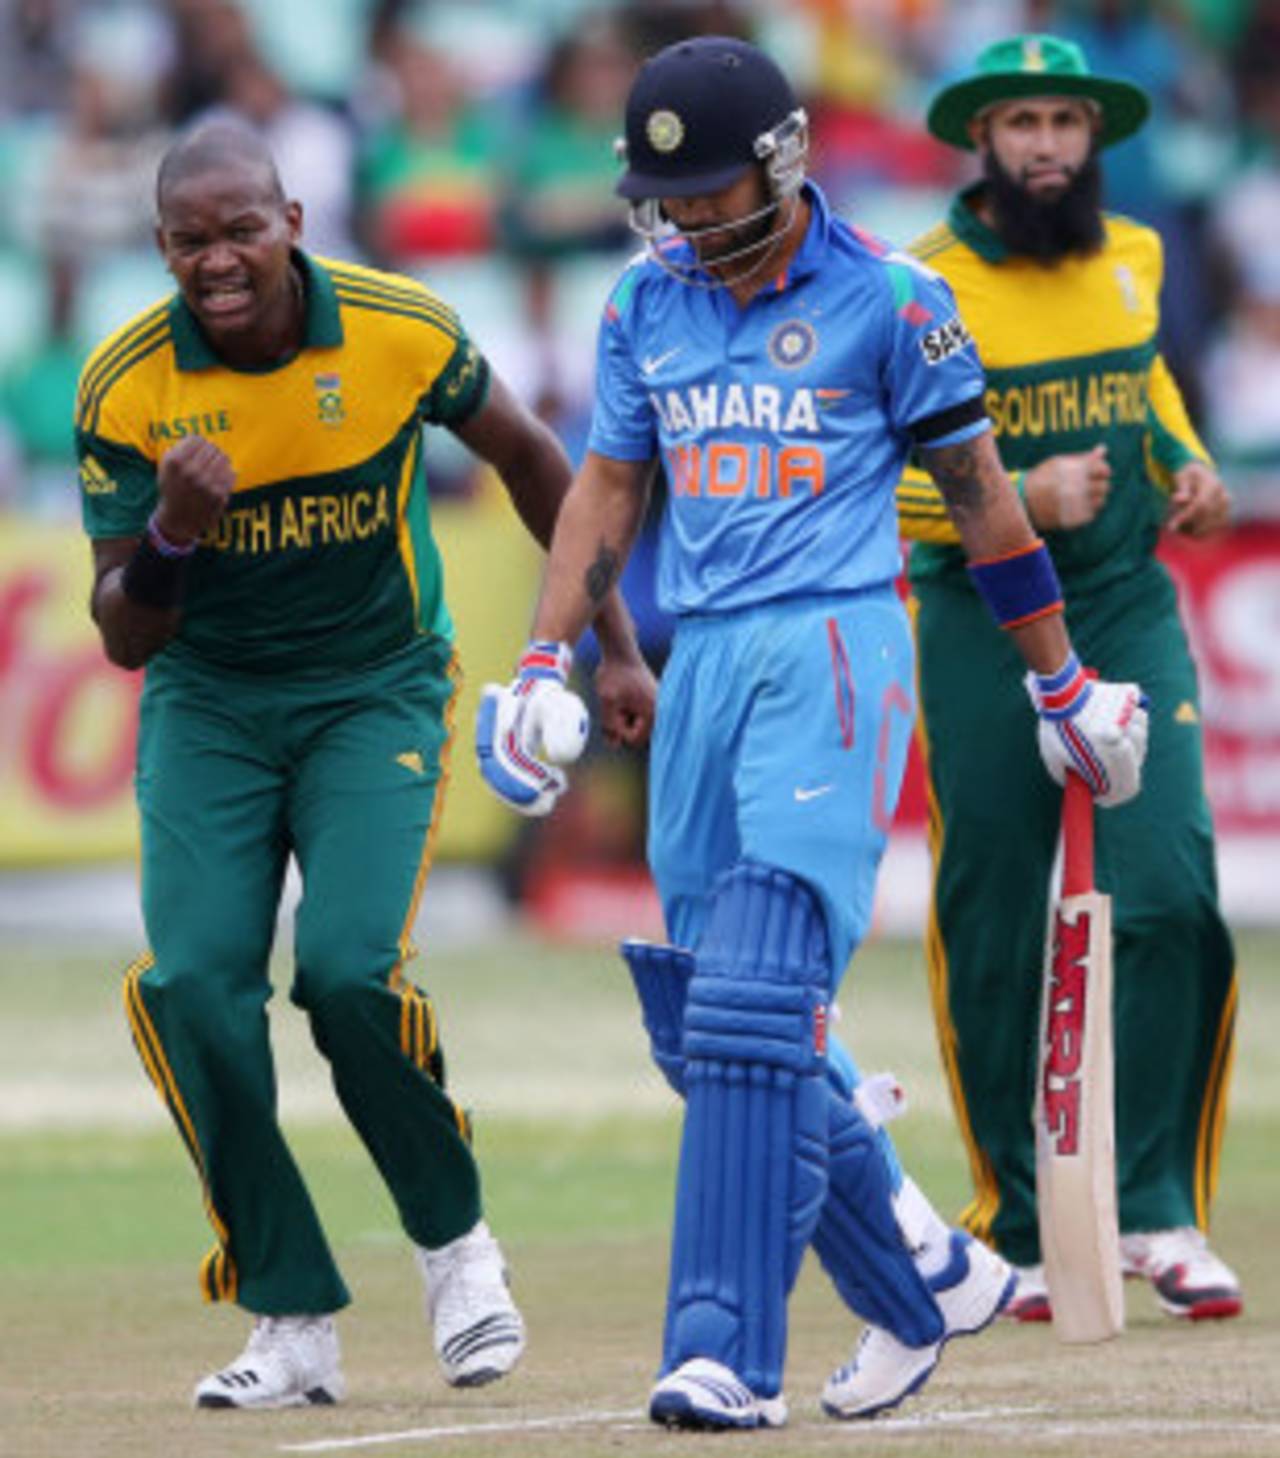 Virat Kohli trudges back to the pavilion after getting a duck, South Africa v India, 2nd ODI, Durban, December 8, 2013